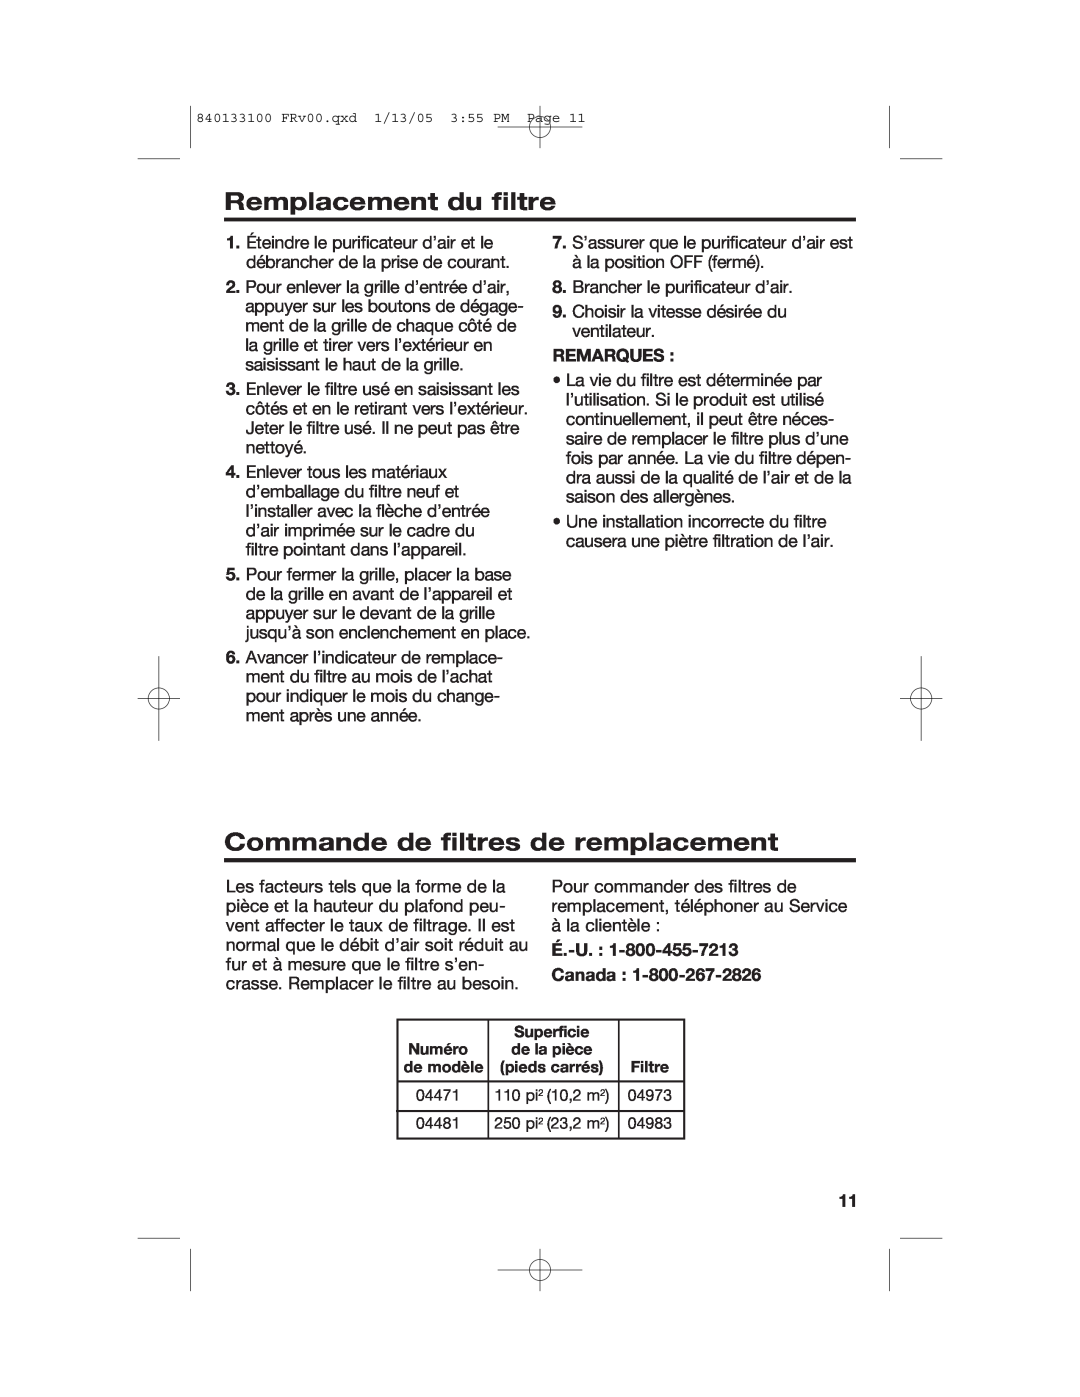 Hamilton Beach HEPA manual Remplacement du filtre, Commande de filtres de remplacement, Remarques, É.-U. Canada 